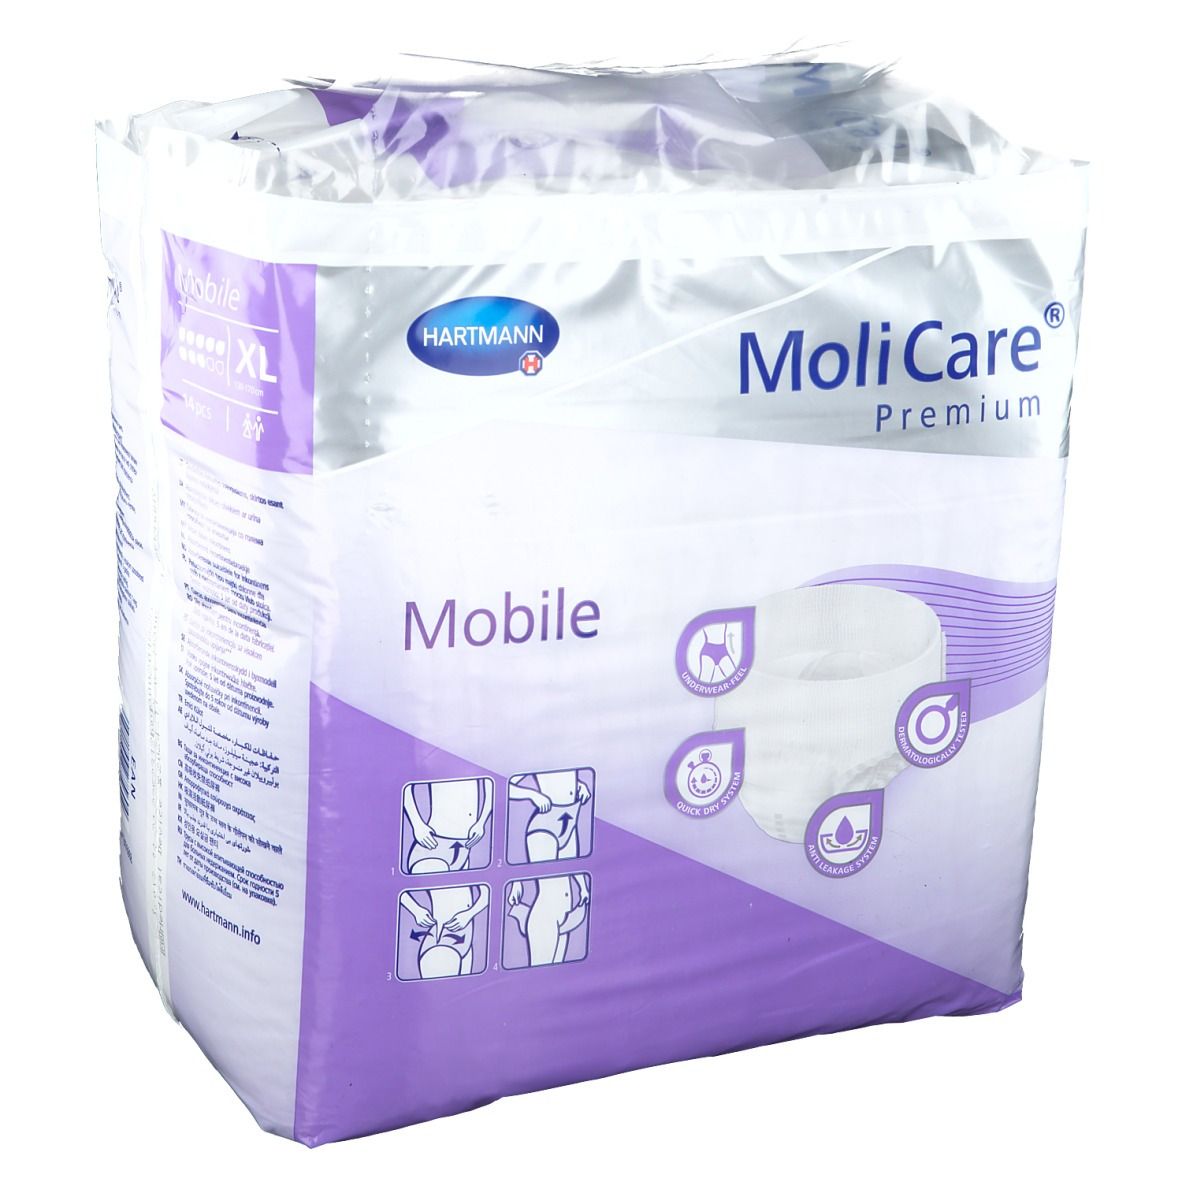 MoliCare® Premium Mobile 8 Tropfen Gr. XL